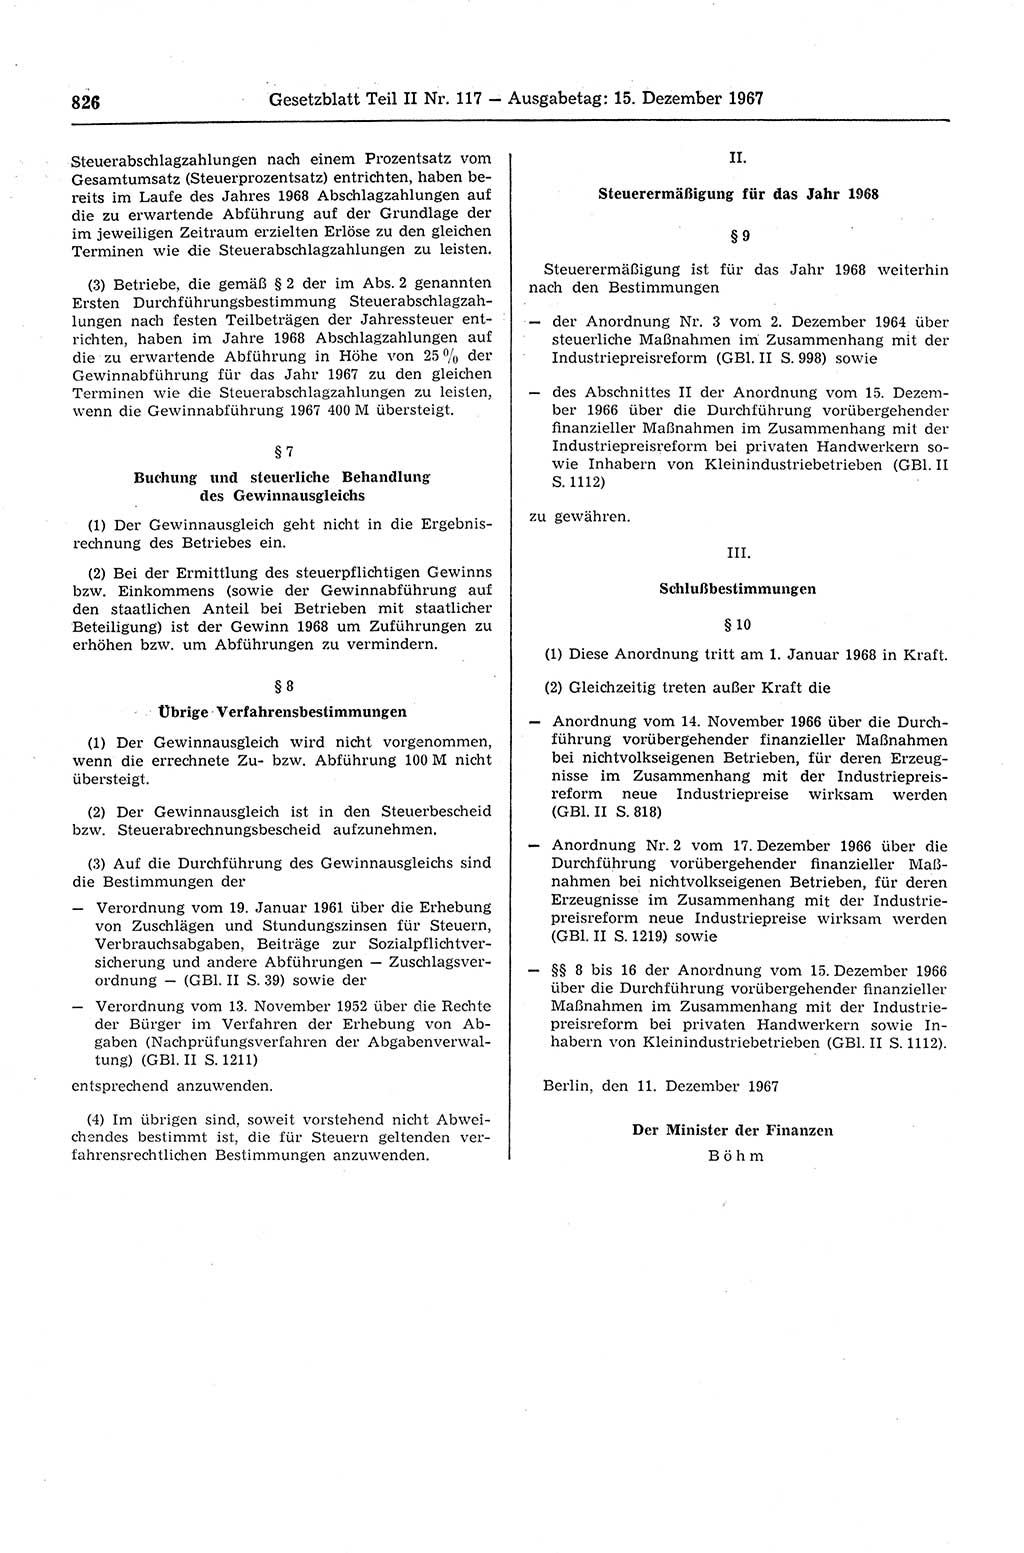 Gesetzblatt (GBl.) der Deutschen Demokratischen Republik (DDR) Teil ⅠⅠ 1967, Seite 826 (GBl. DDR ⅠⅠ 1967, S. 826)